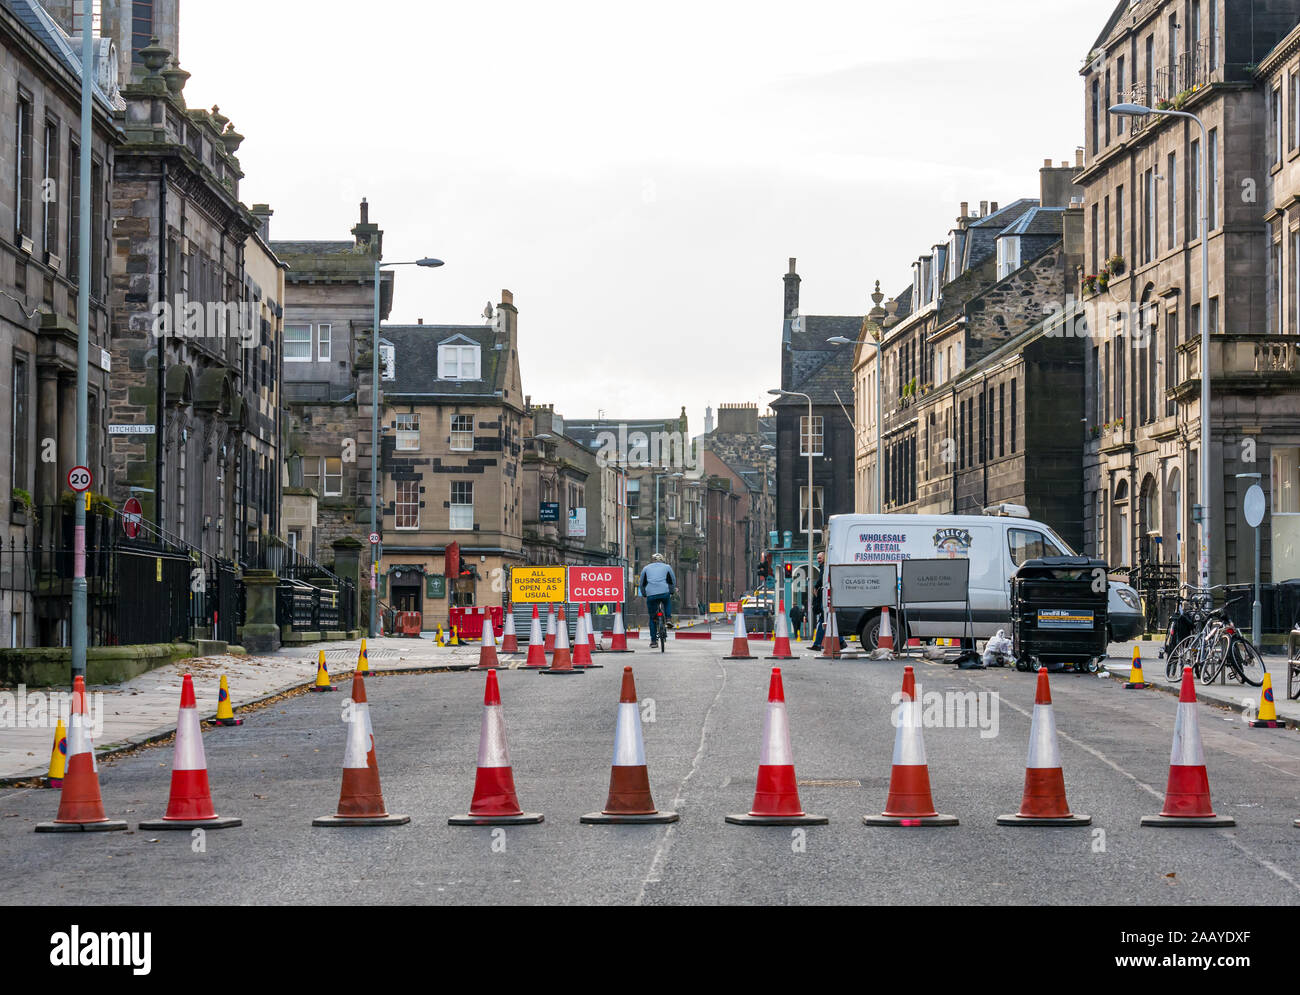 Straßensperre aufgrund von Bauarbeiten für Straßenbahnen Newhaven, Erweiterung, Verfassung, Leith Street, Edinburgh, Schottland, Großbritannien Stockfoto